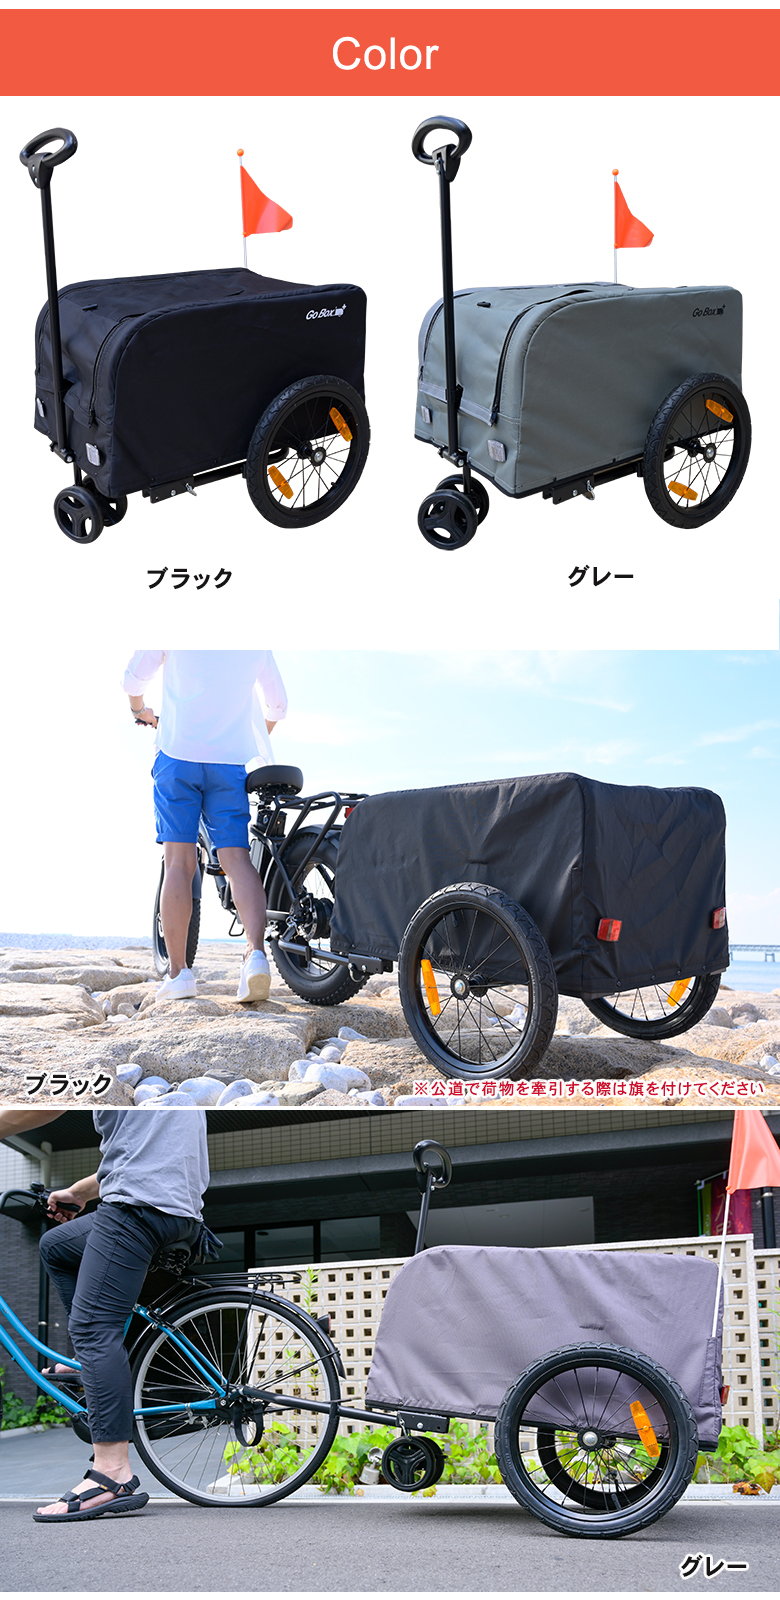 GO BOX＋ ゴーボックス キャリーワゴン サイクルトレーラー リヤカー アウトドアワゴン キャンプワゴン キャリーカート ペットカート  耐荷重60kg 大型タイヤ